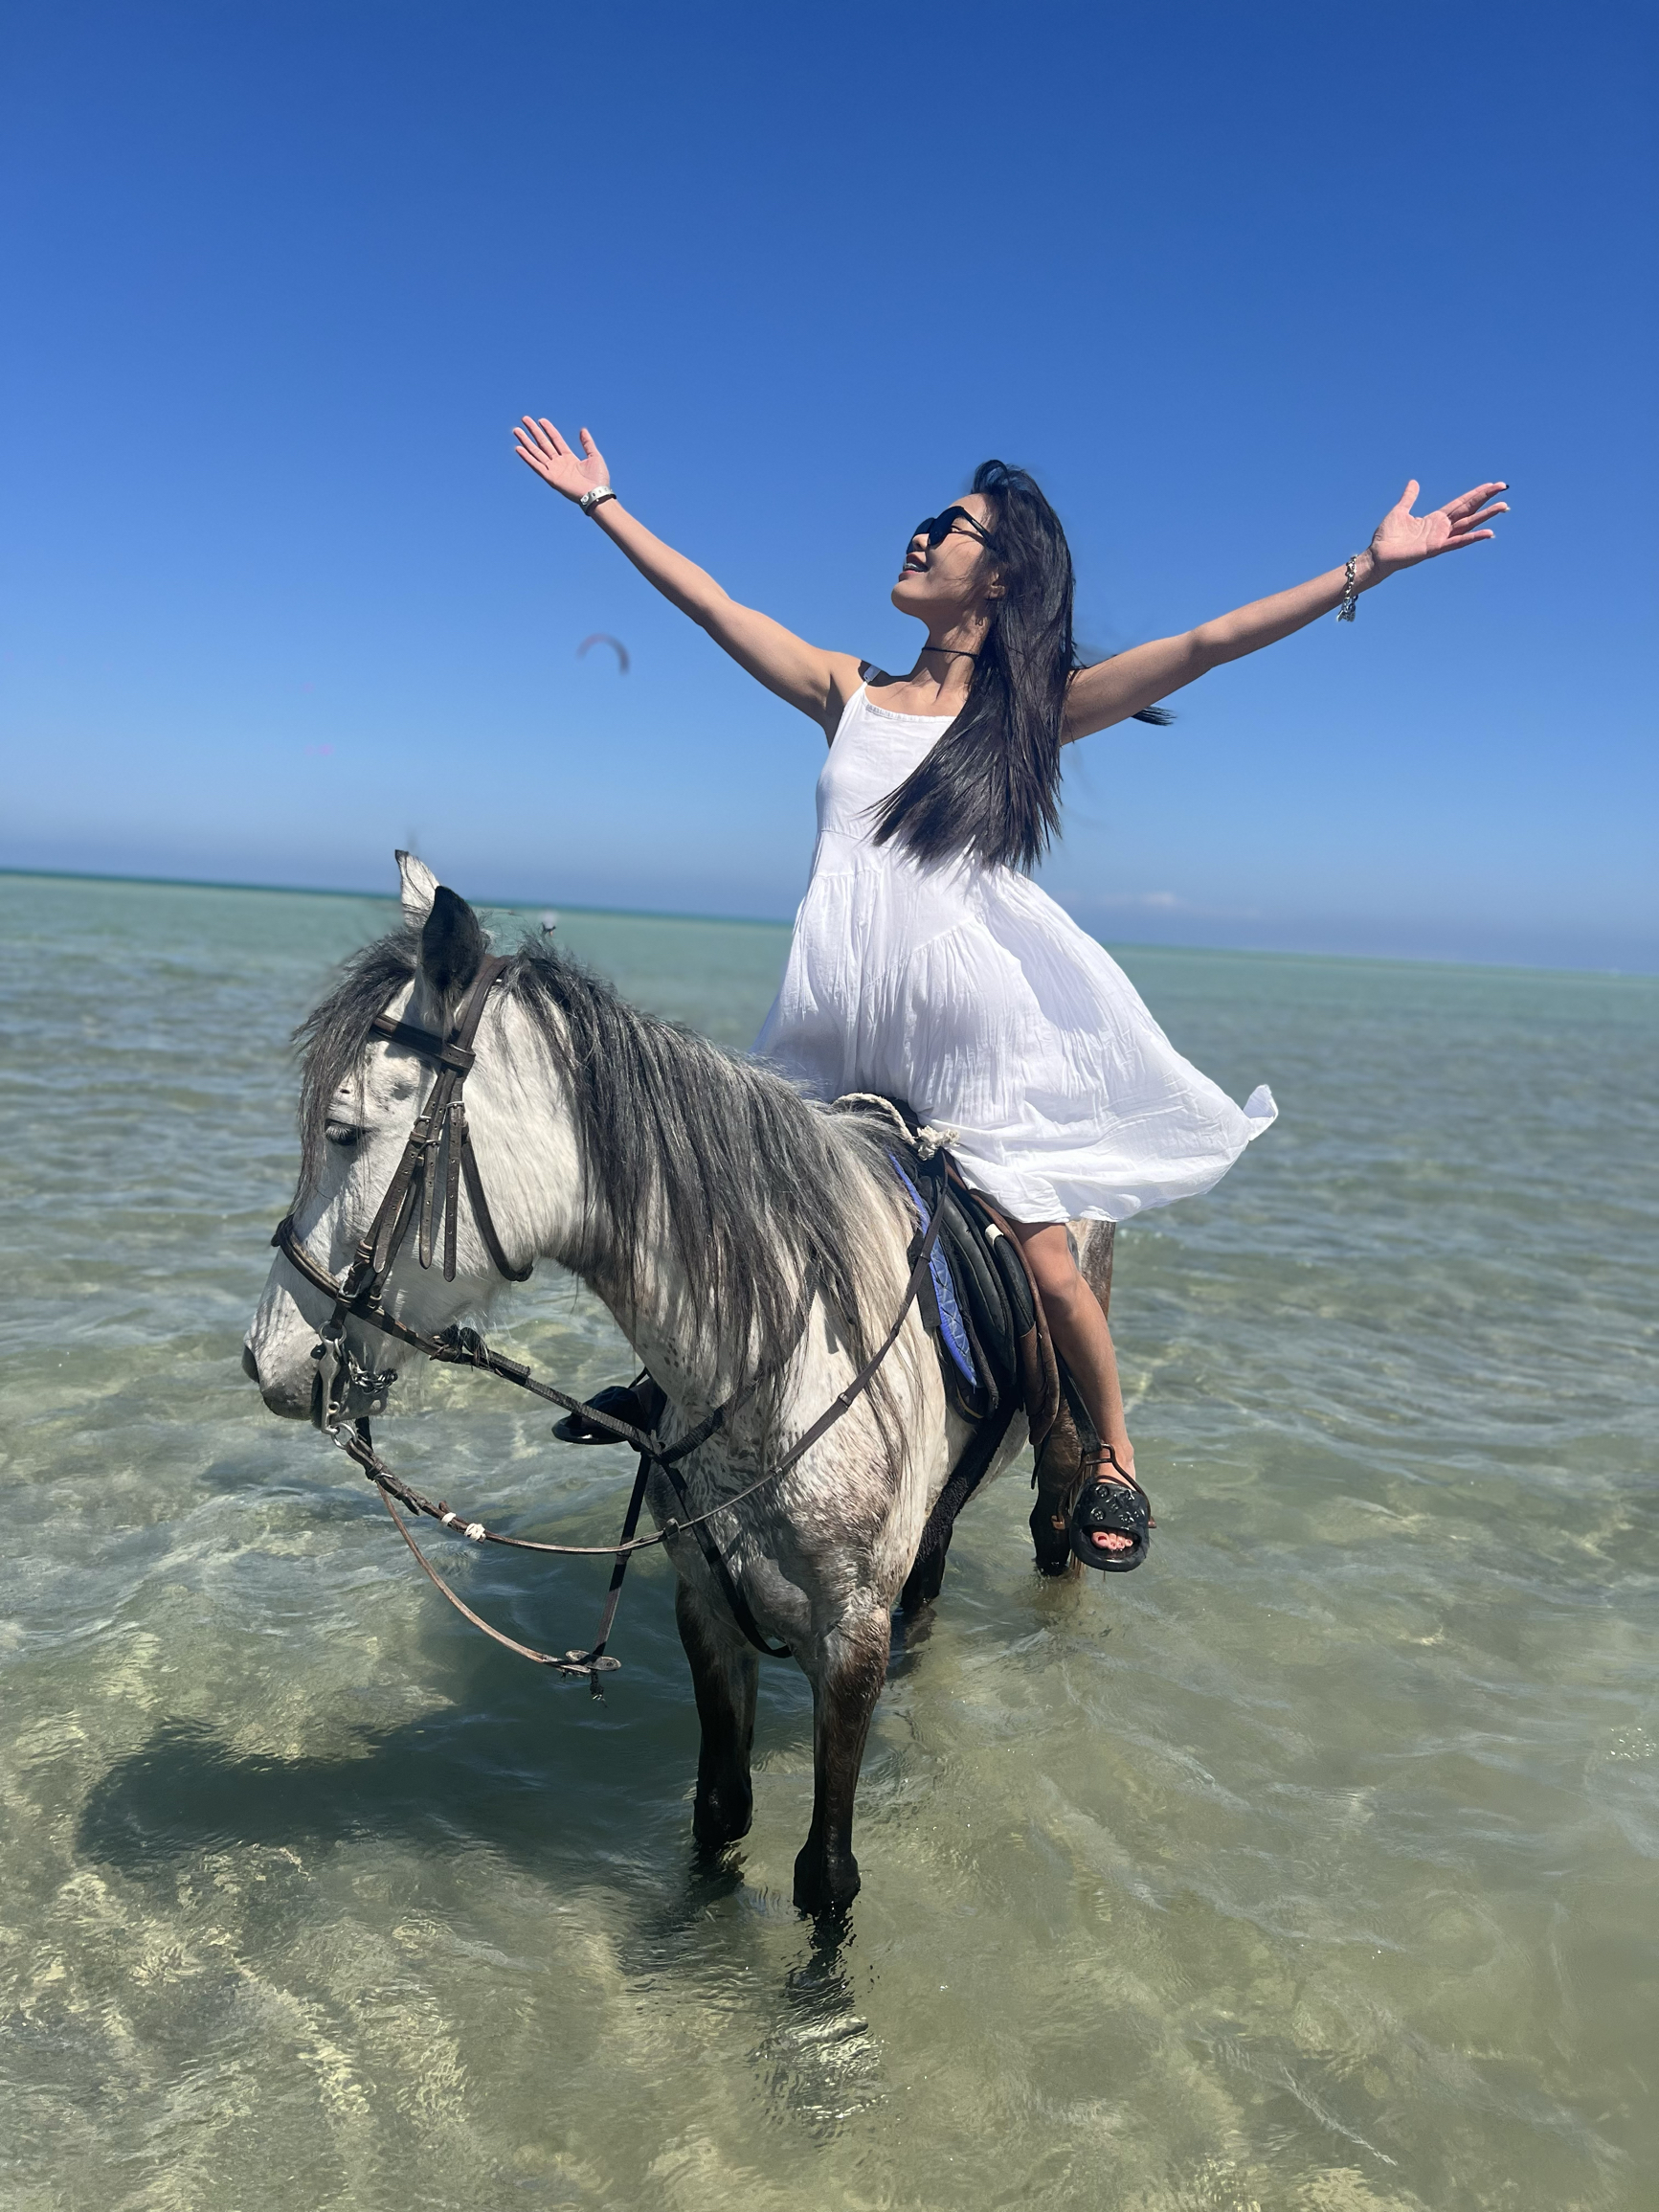 埃及🇪🇬｜赫嘎达 الغردقة·红海 沙滩骑马